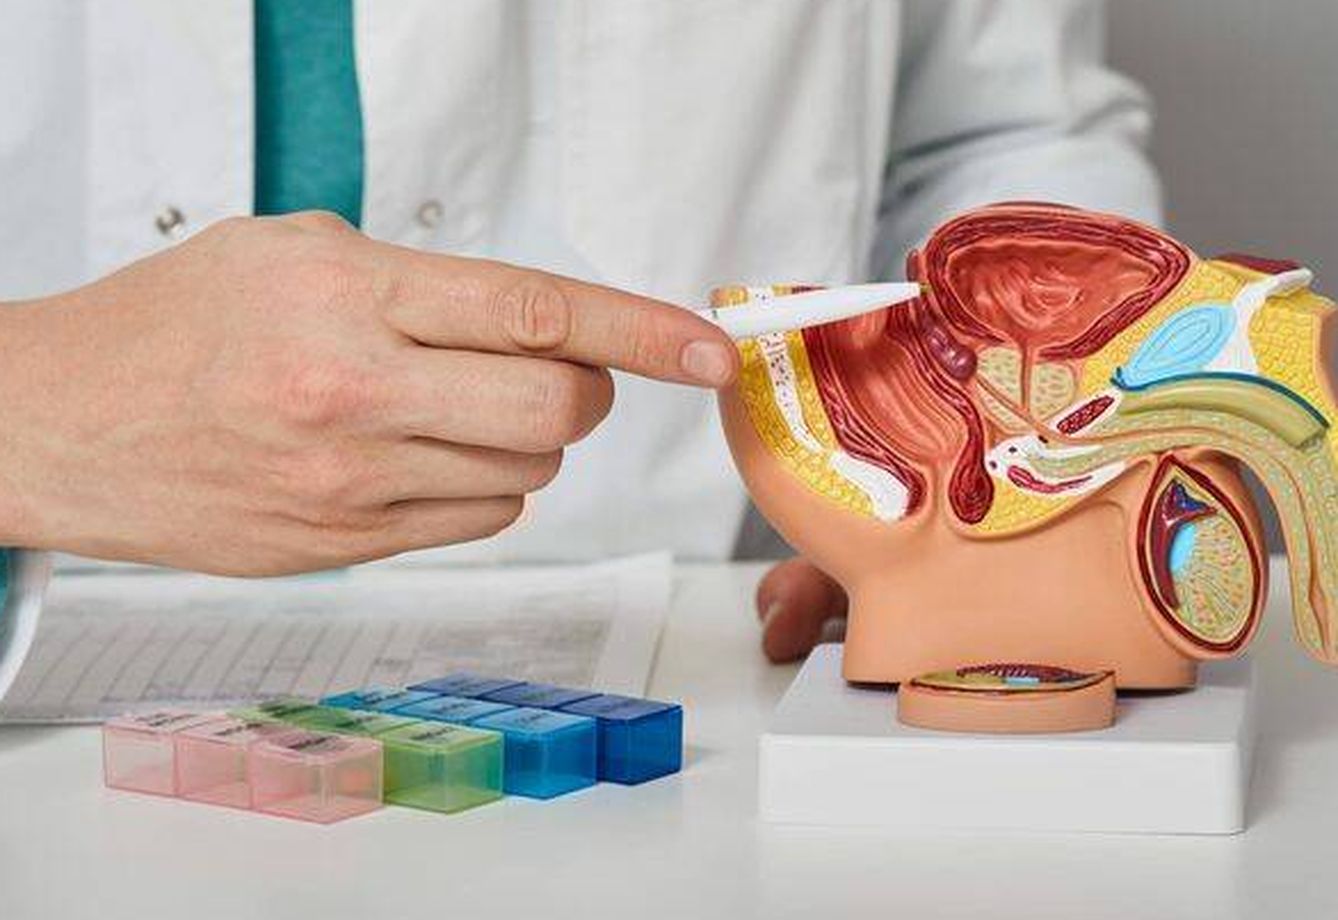 Un doctor explica la anatomía de la próstata. (iStock)